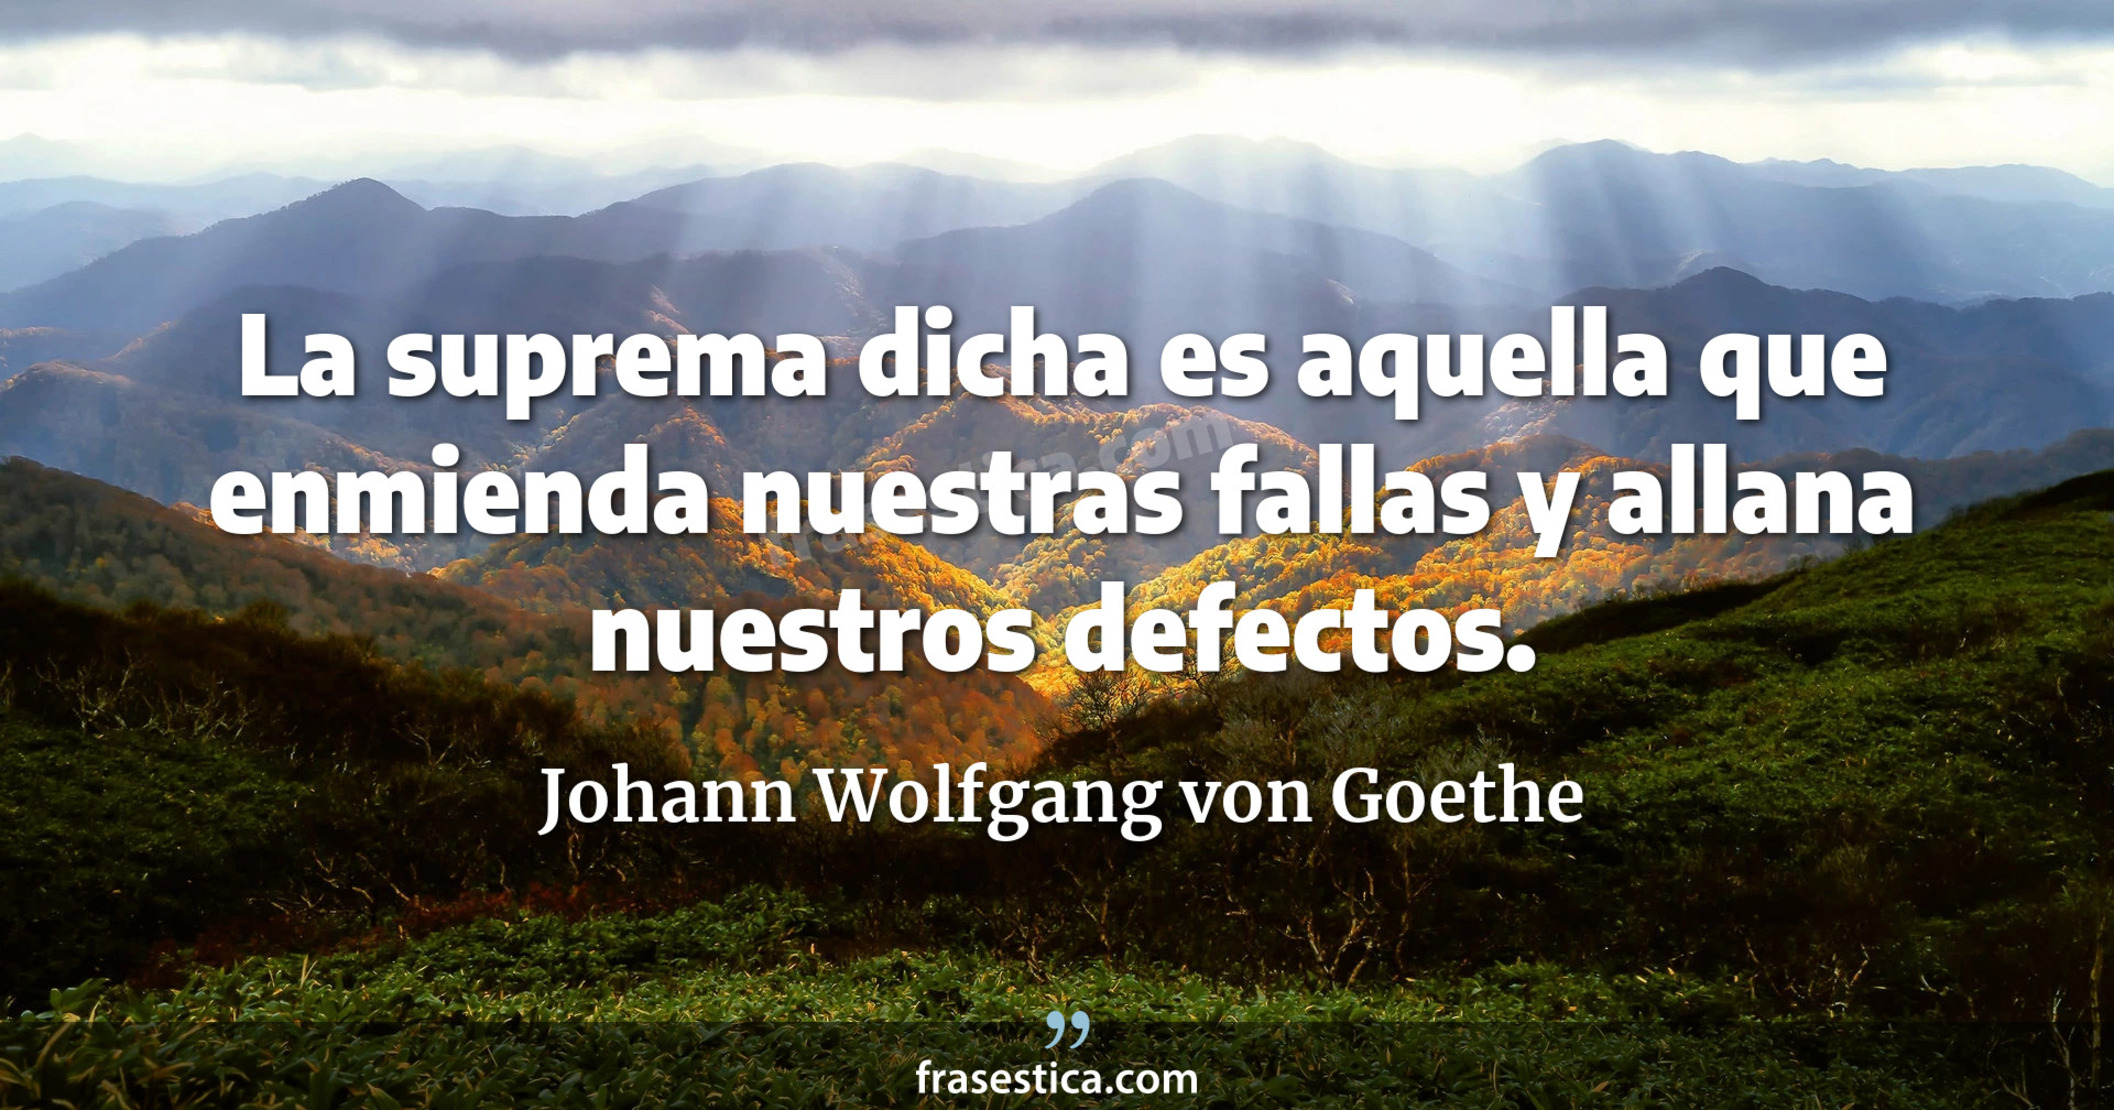 La suprema dicha es aquella que enmienda nuestras fallas y allana nuestros defectos. - Johann Wolfgang von Goethe